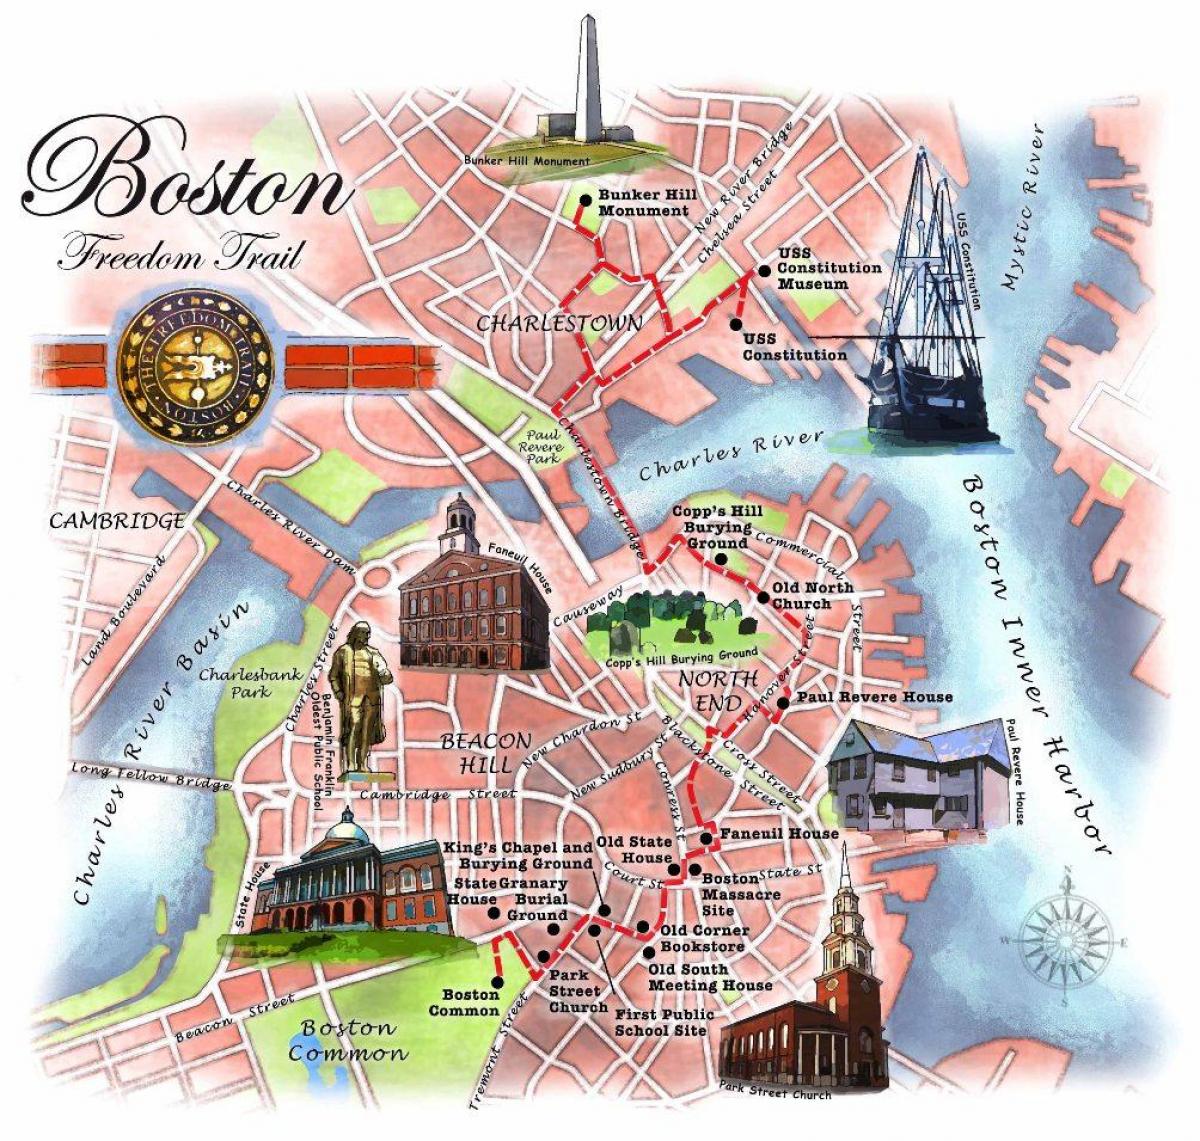 نقشہ کے بوسٹن آزادی ٹریل